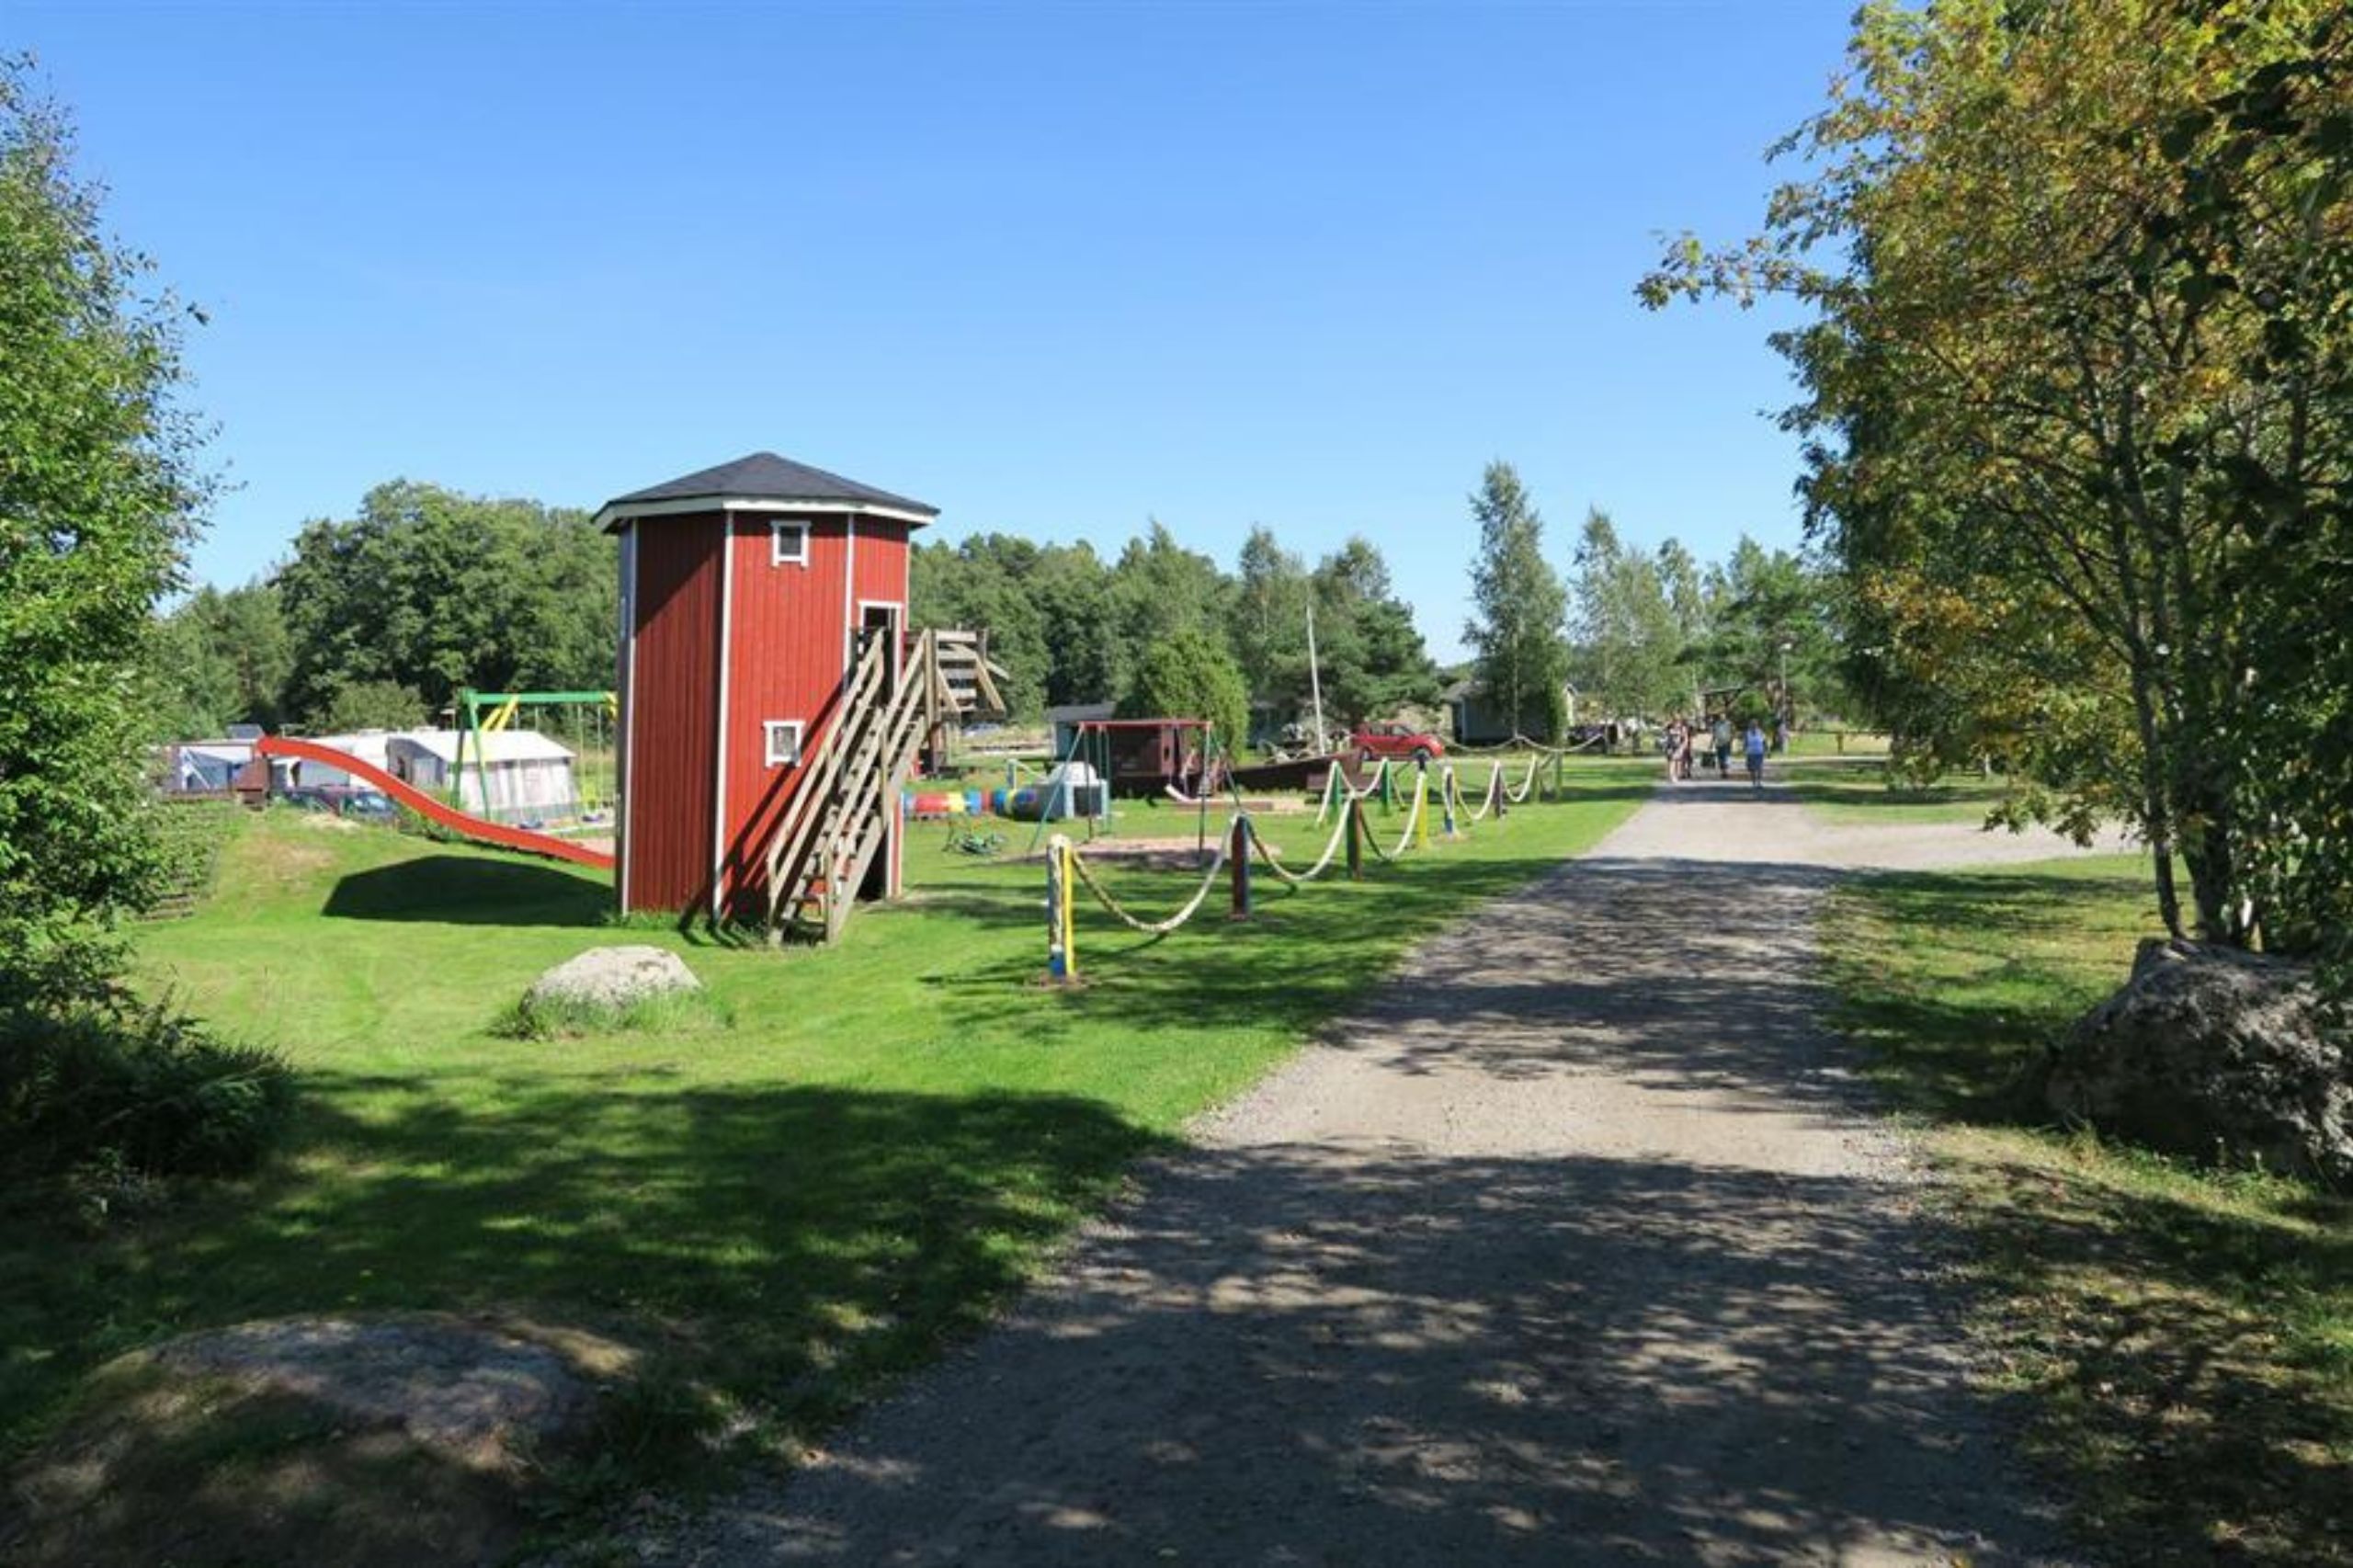 Ihanteellinen kaikille lapsille ja hauska soratie - Livonsaaren leirintäalueen leikkipaikka Suomessa. 